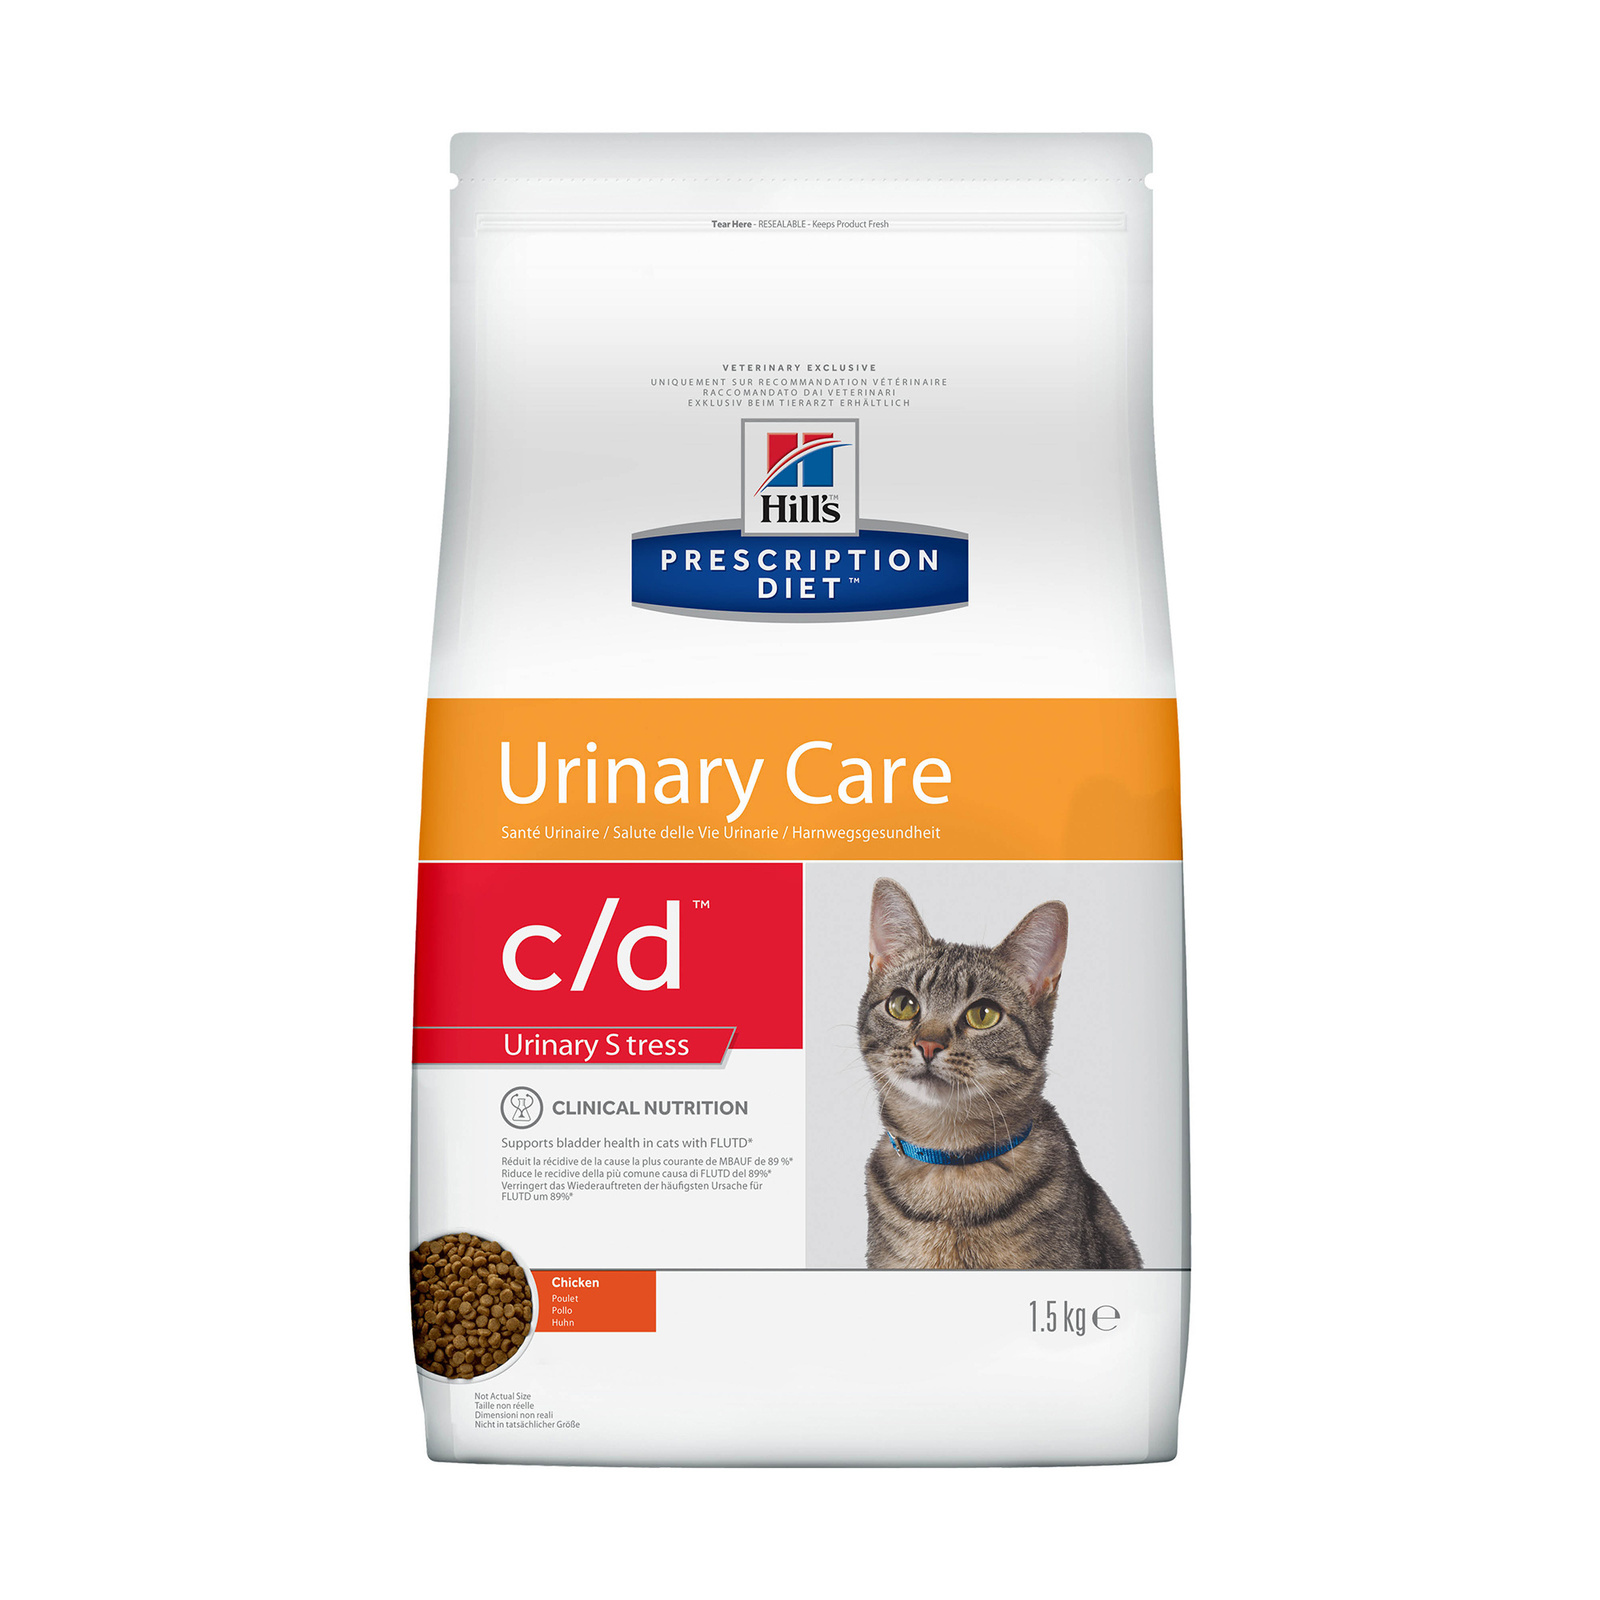 Корм Hill's Prescription Diet c/d Multicare Urinary Stress сухой диетический, для кошек при профилактике цистита и мочекаменной болезни (МКБ), в том числе вызванной стрессом, с курицей (1,5 кг)